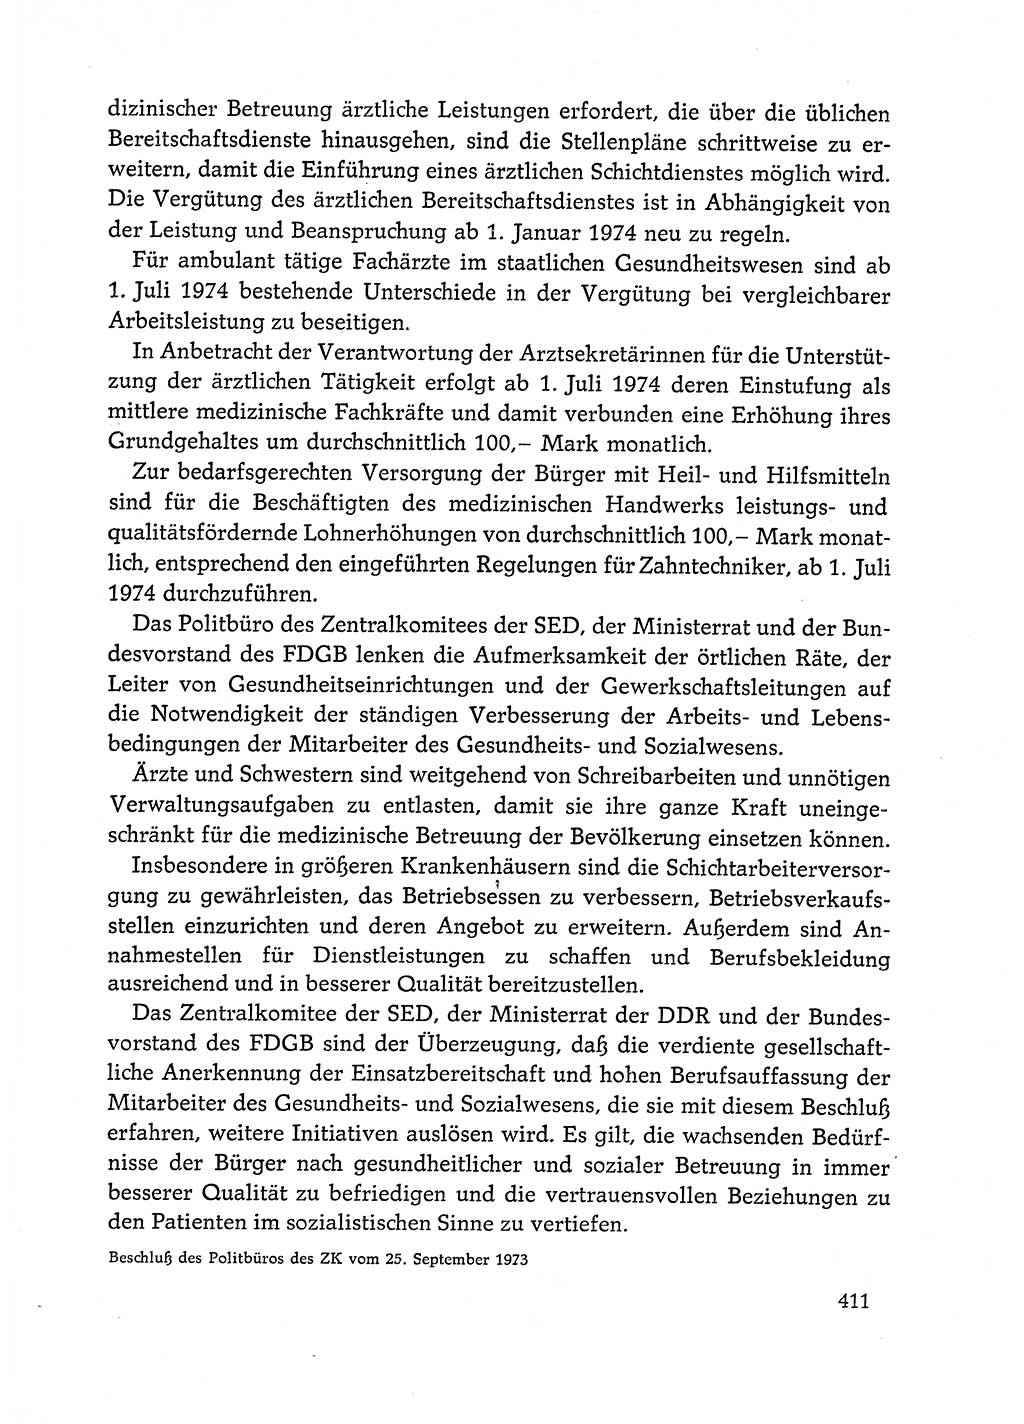 Dokumente der Sozialistischen Einheitspartei Deutschlands (SED) [Deutsche Demokratische Republik (DDR)] 1972-1973, Seite 411 (Dok. SED DDR 1972-1973, S. 411)